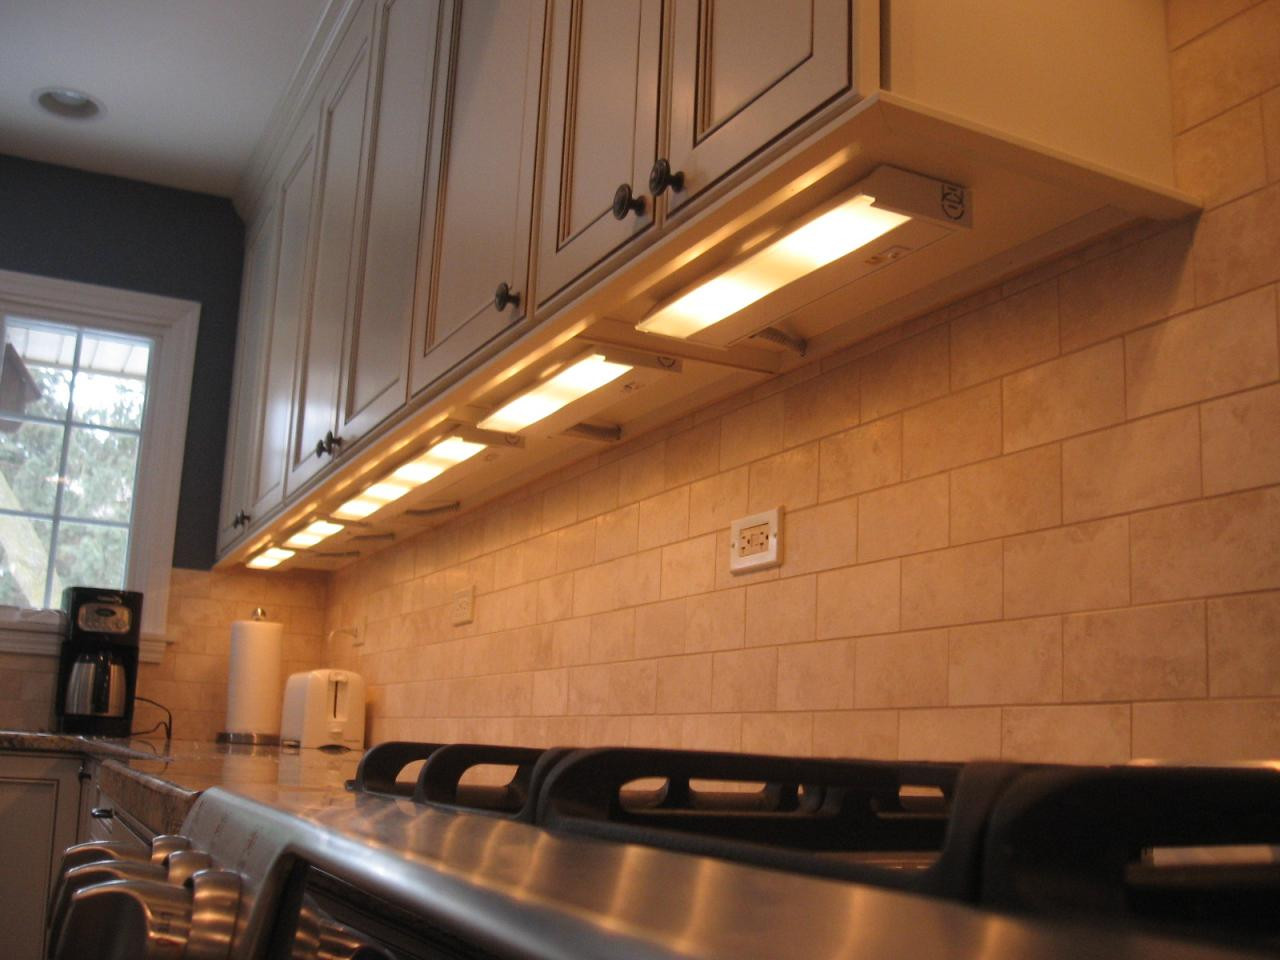 Under Cabinet Lighting For Kitchen
 Tip Under Cabinet Lighting